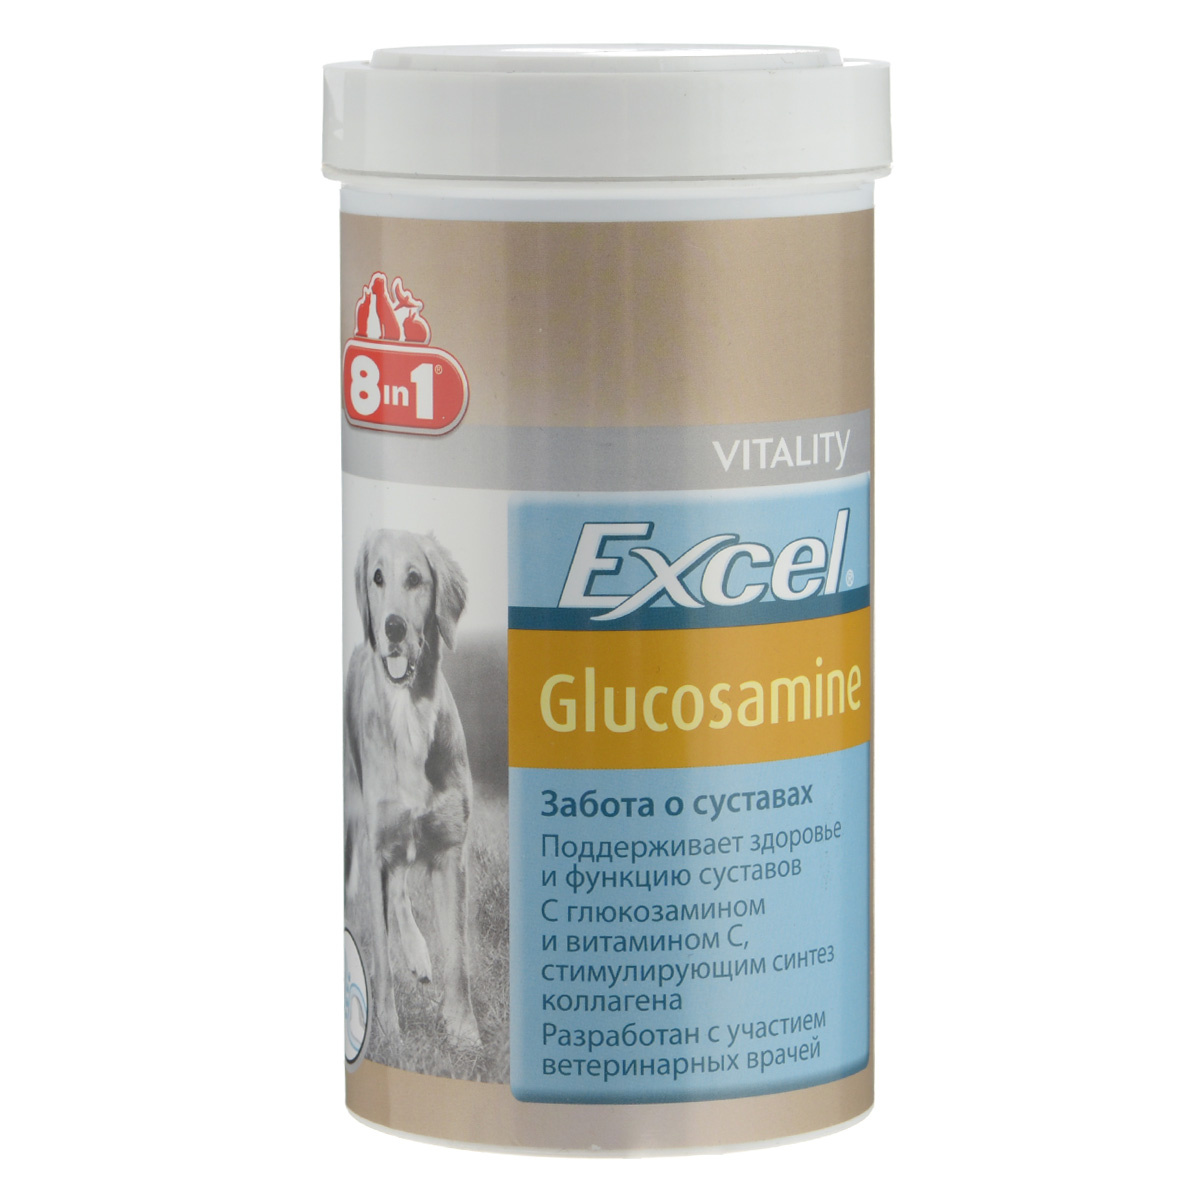 8в1 витамины для собак. Excel 8 in 1 для собак Glucosamine. Витамины excel 8 in 1 для собак глюкозамин. Эксель глюкозамин для собак 8 в 1глюкозами. 8 В 1 эксель глюкозамин д/собак 55 табл.